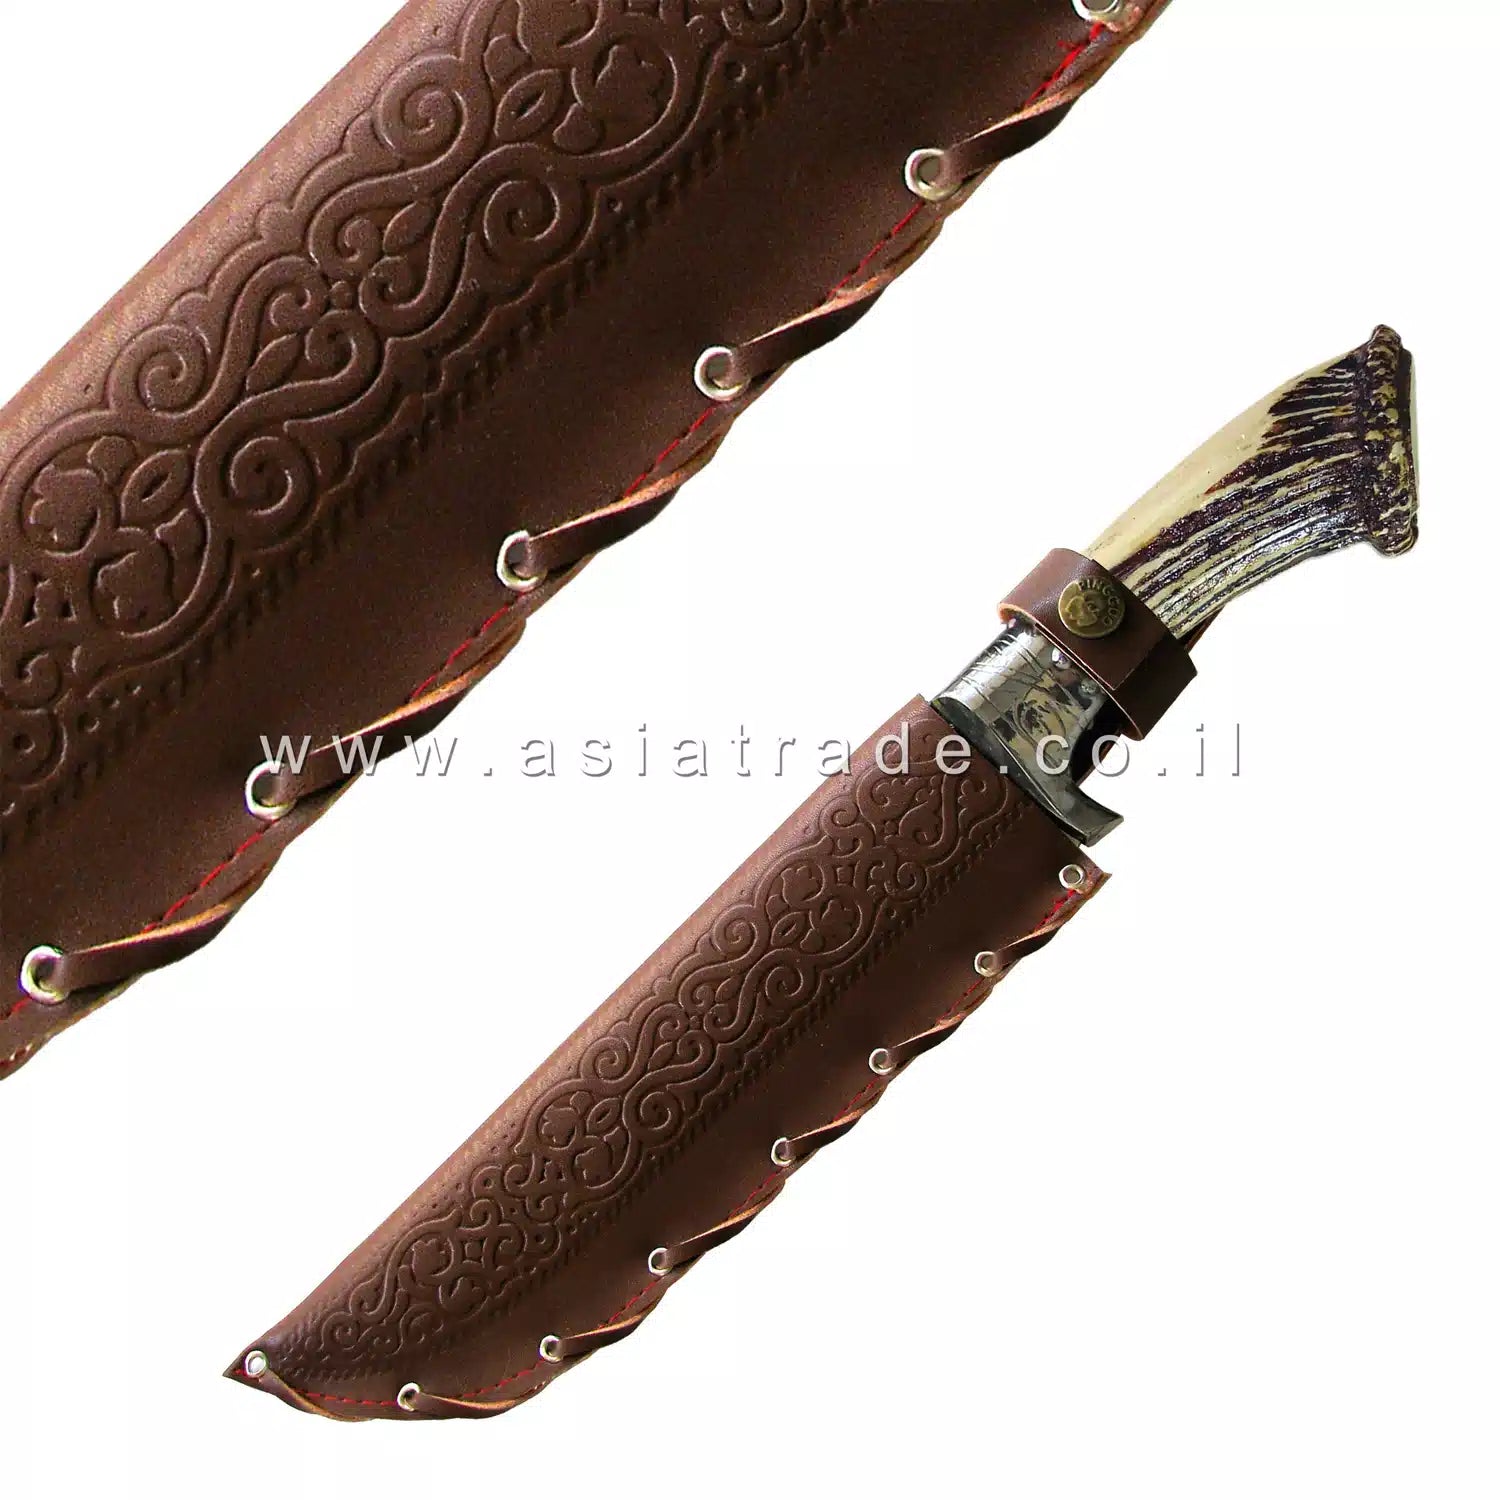 Узбекский нож ручной работы, Пчак - CHUST 1122